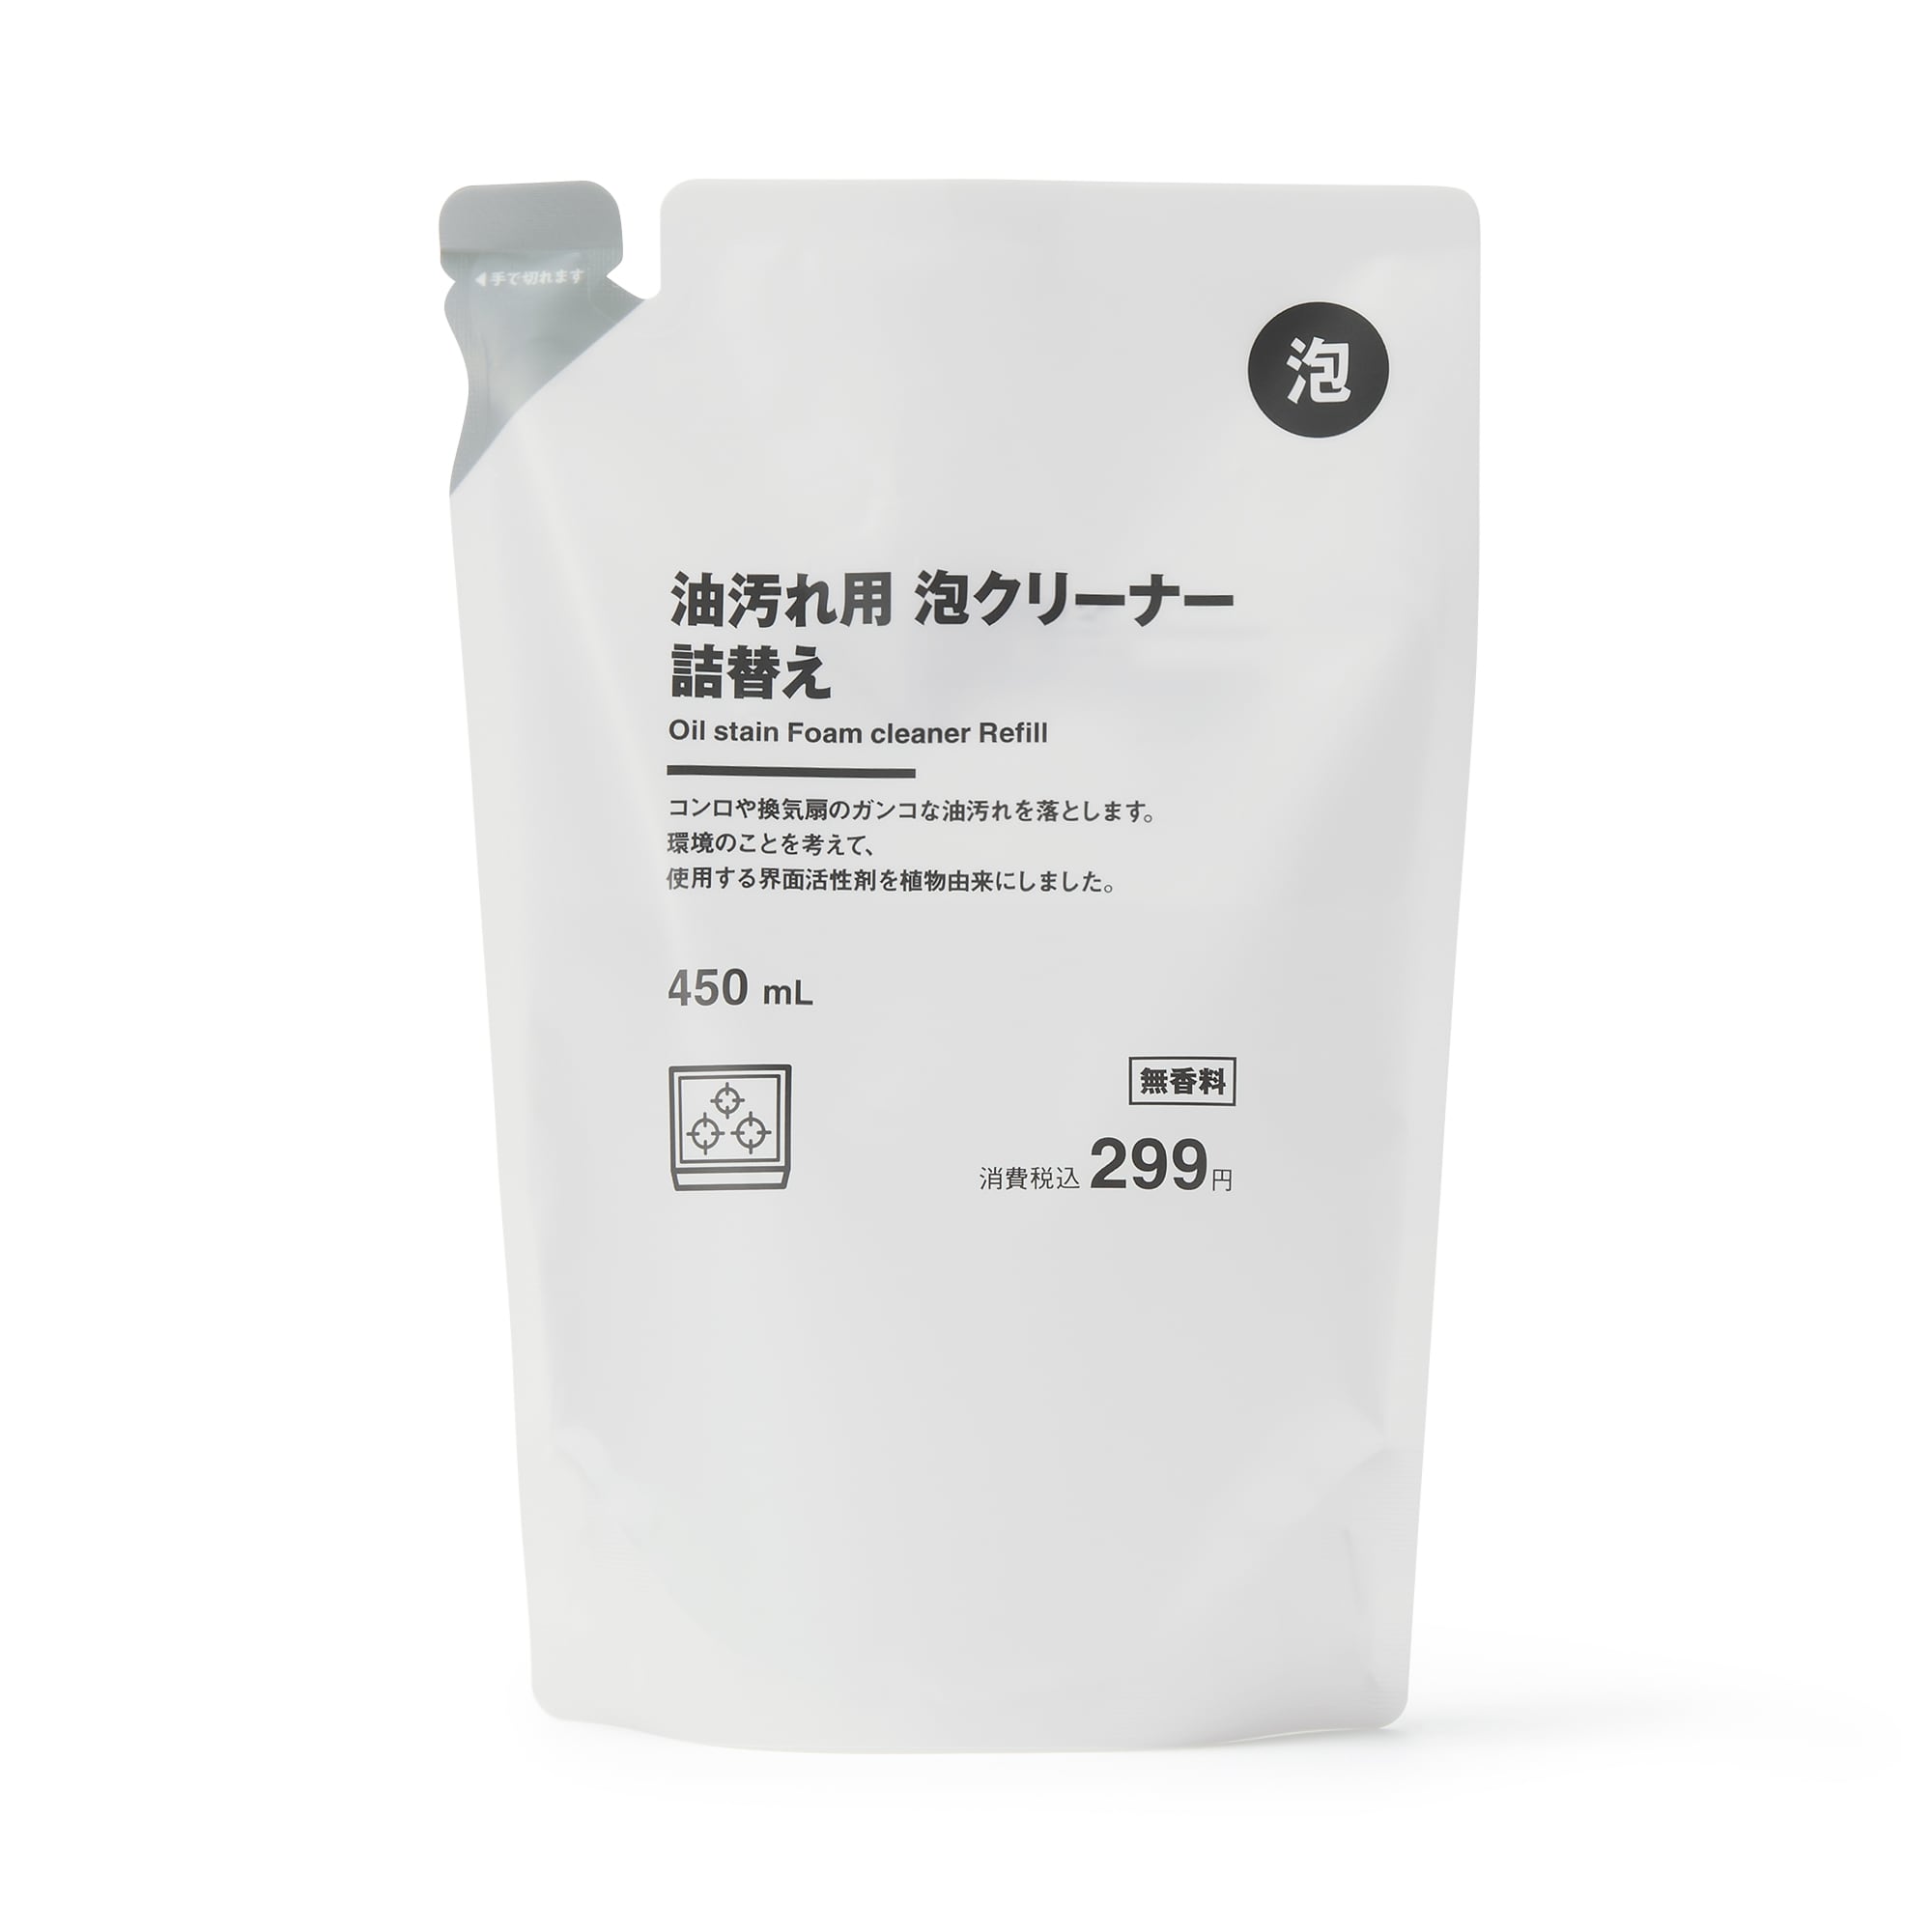 무인양품 일본 주방 세제 기름때 거품 클리너 리필용 450ml